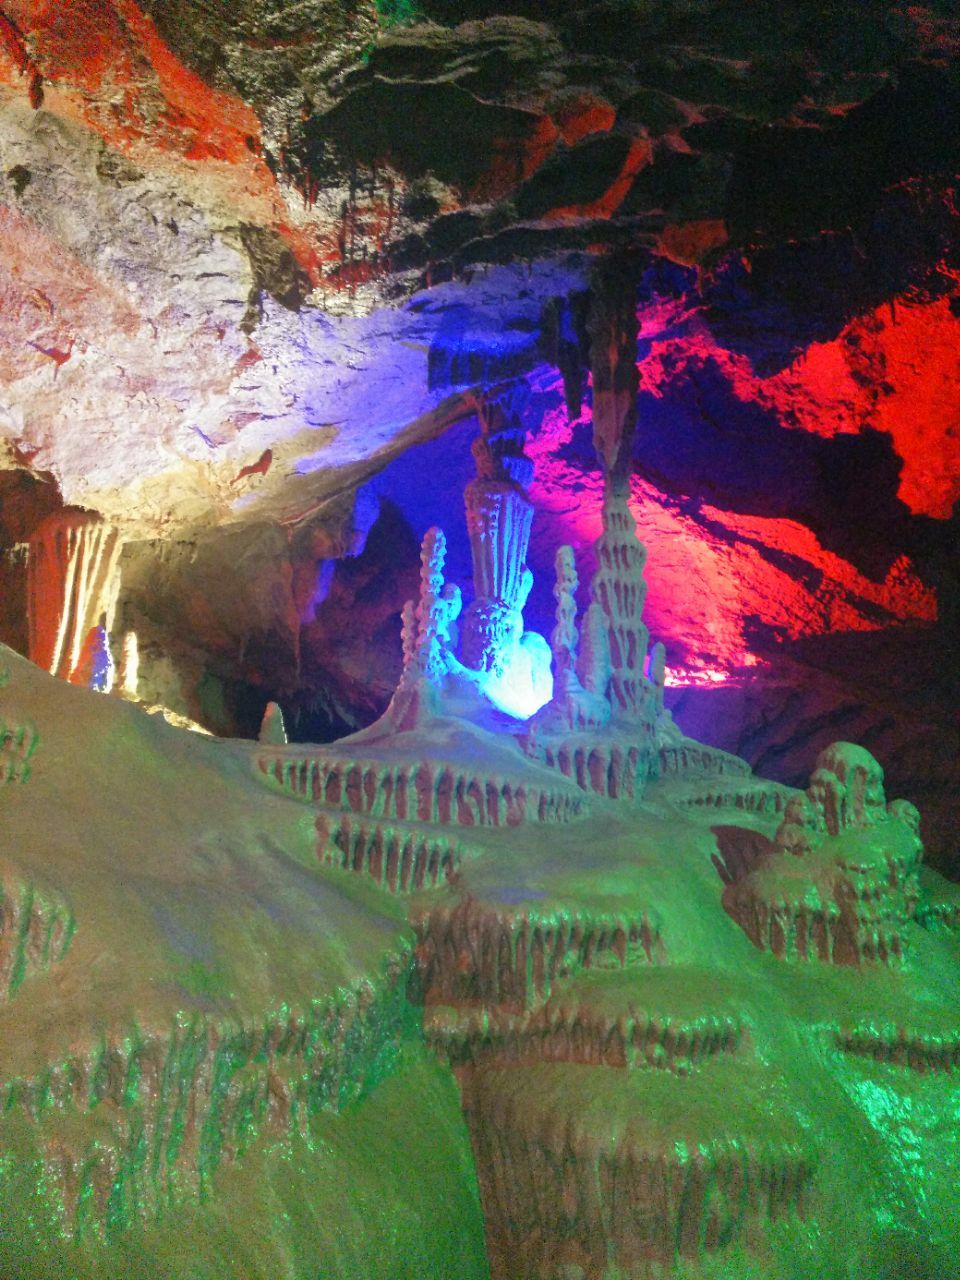 野三坡鱼谷洞与其他的自然溶洞景观相比有很大的特点,洞内的钟乳石